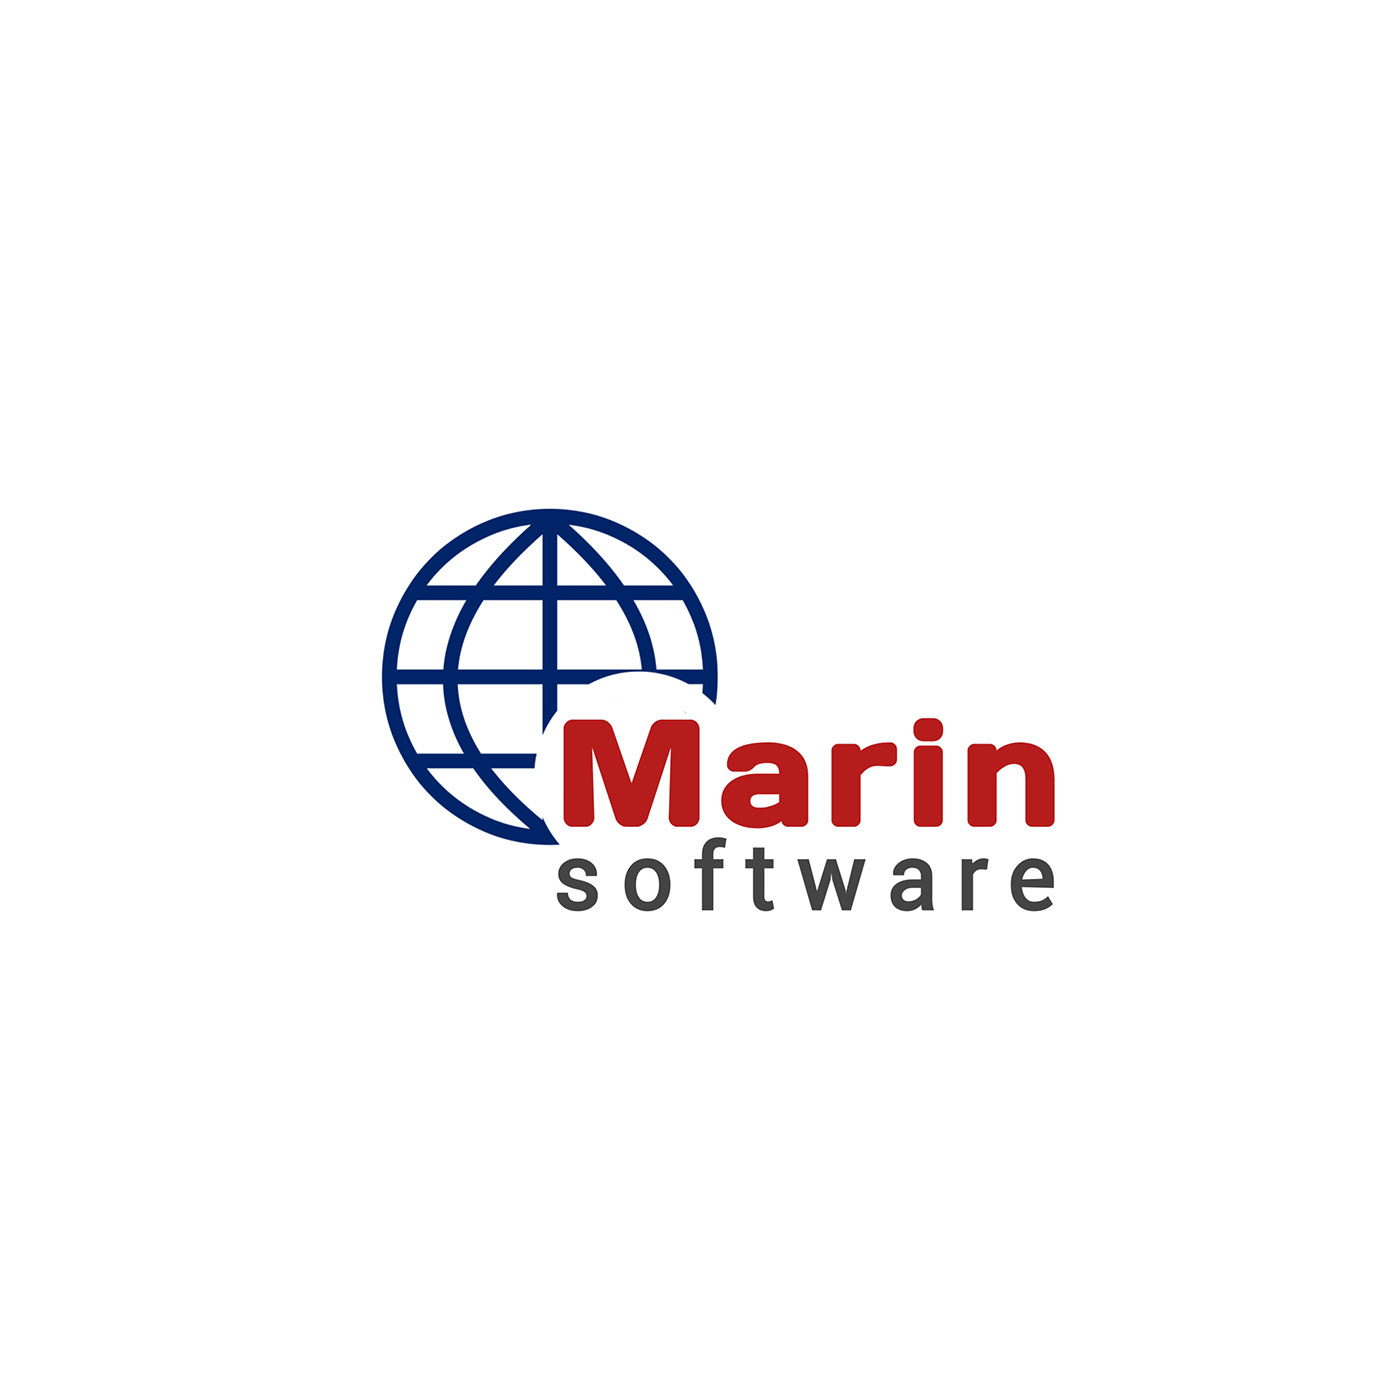 logo software company Computer tech ИТ